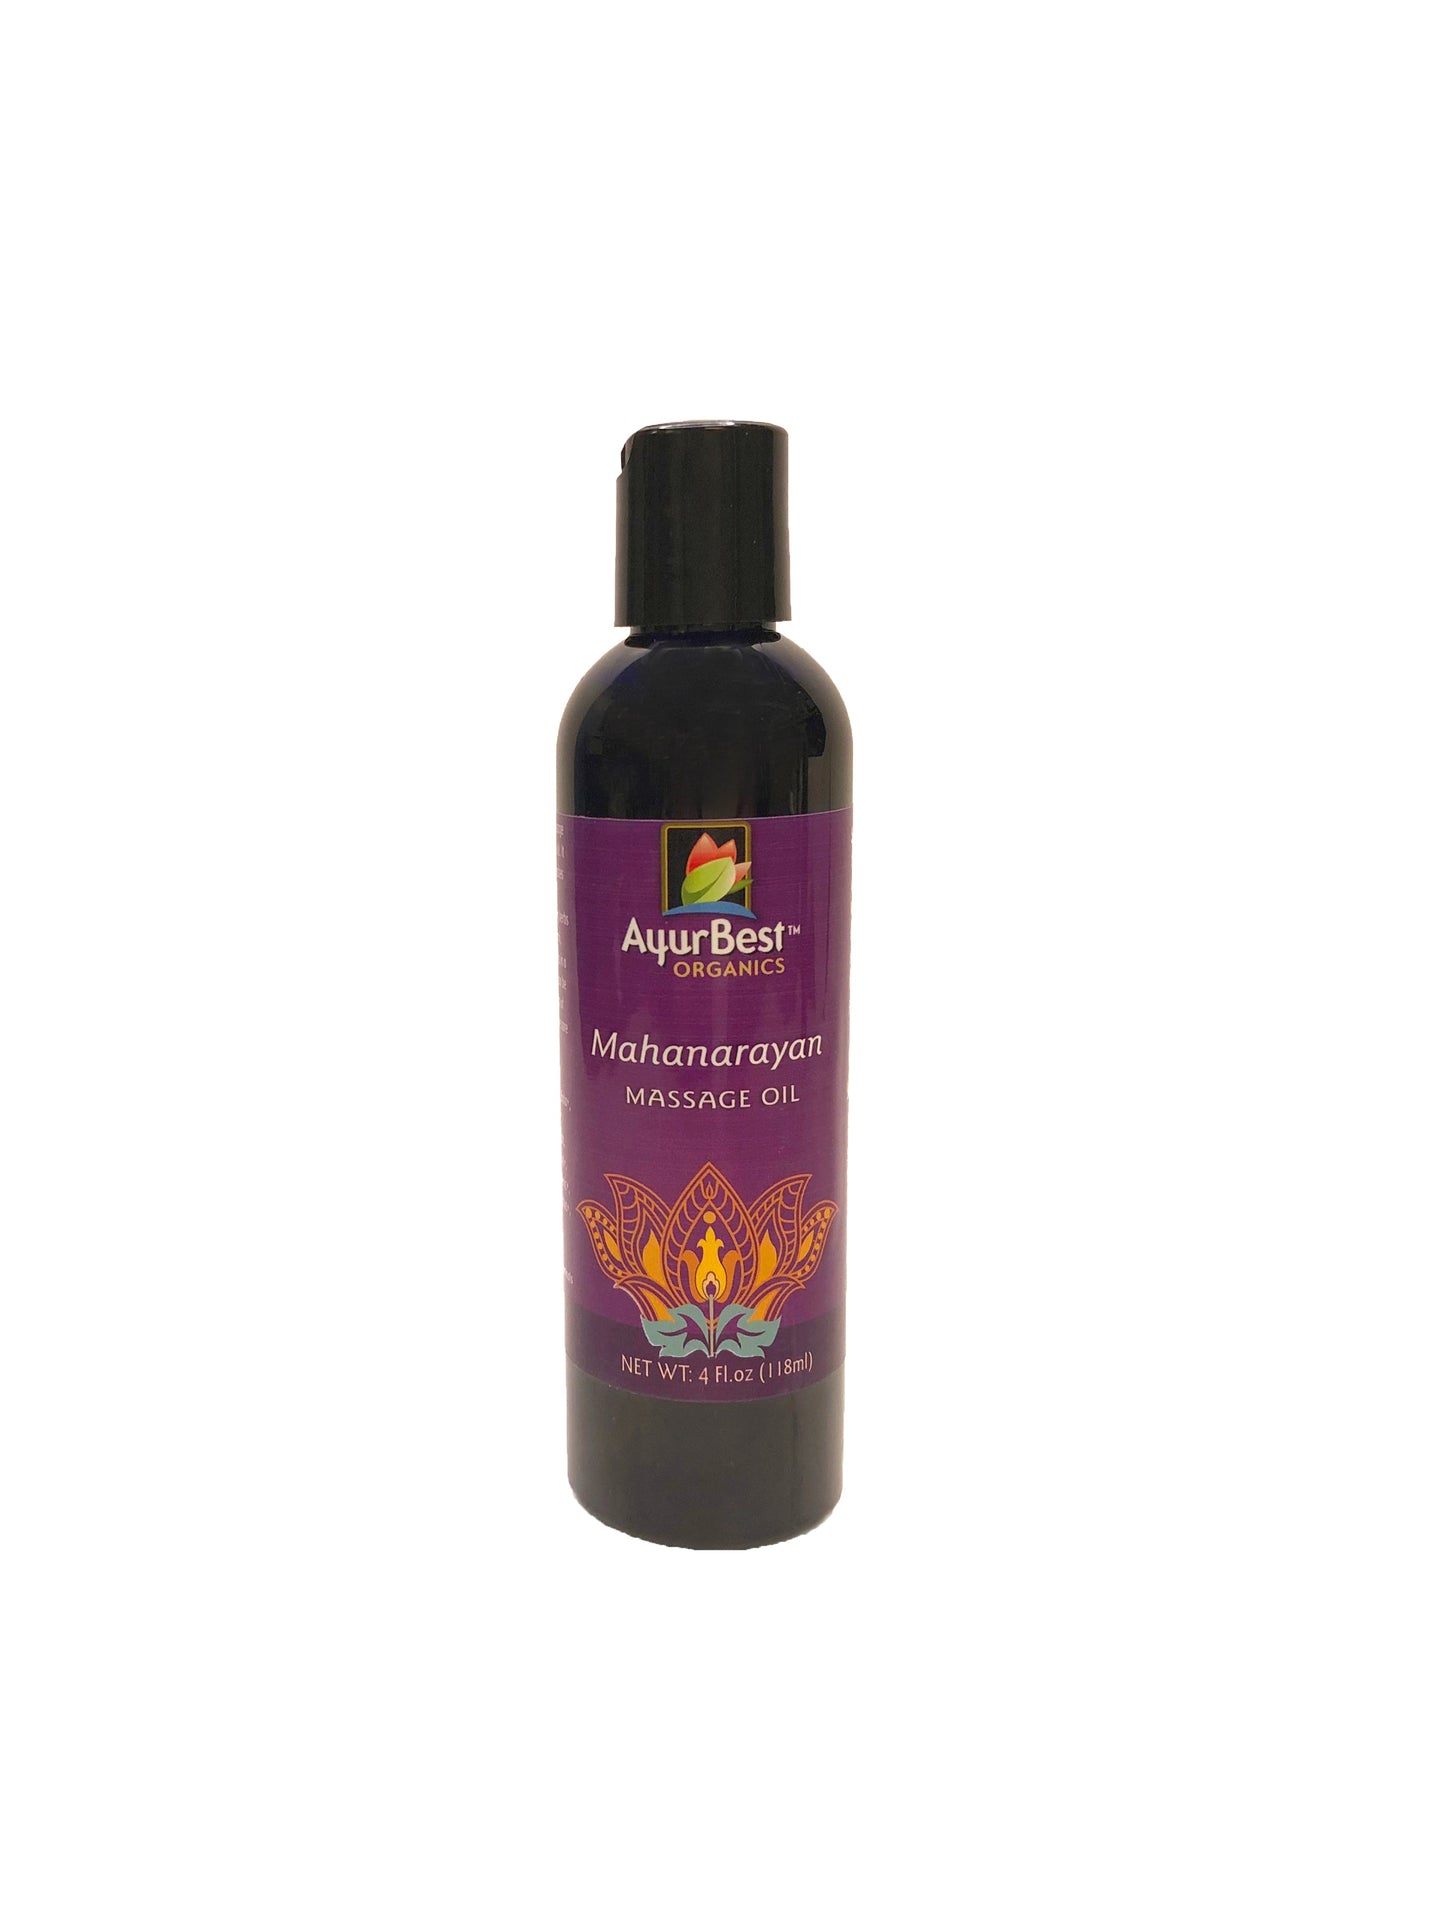 Wholesale Oils - Mahanarayan Massage Oil